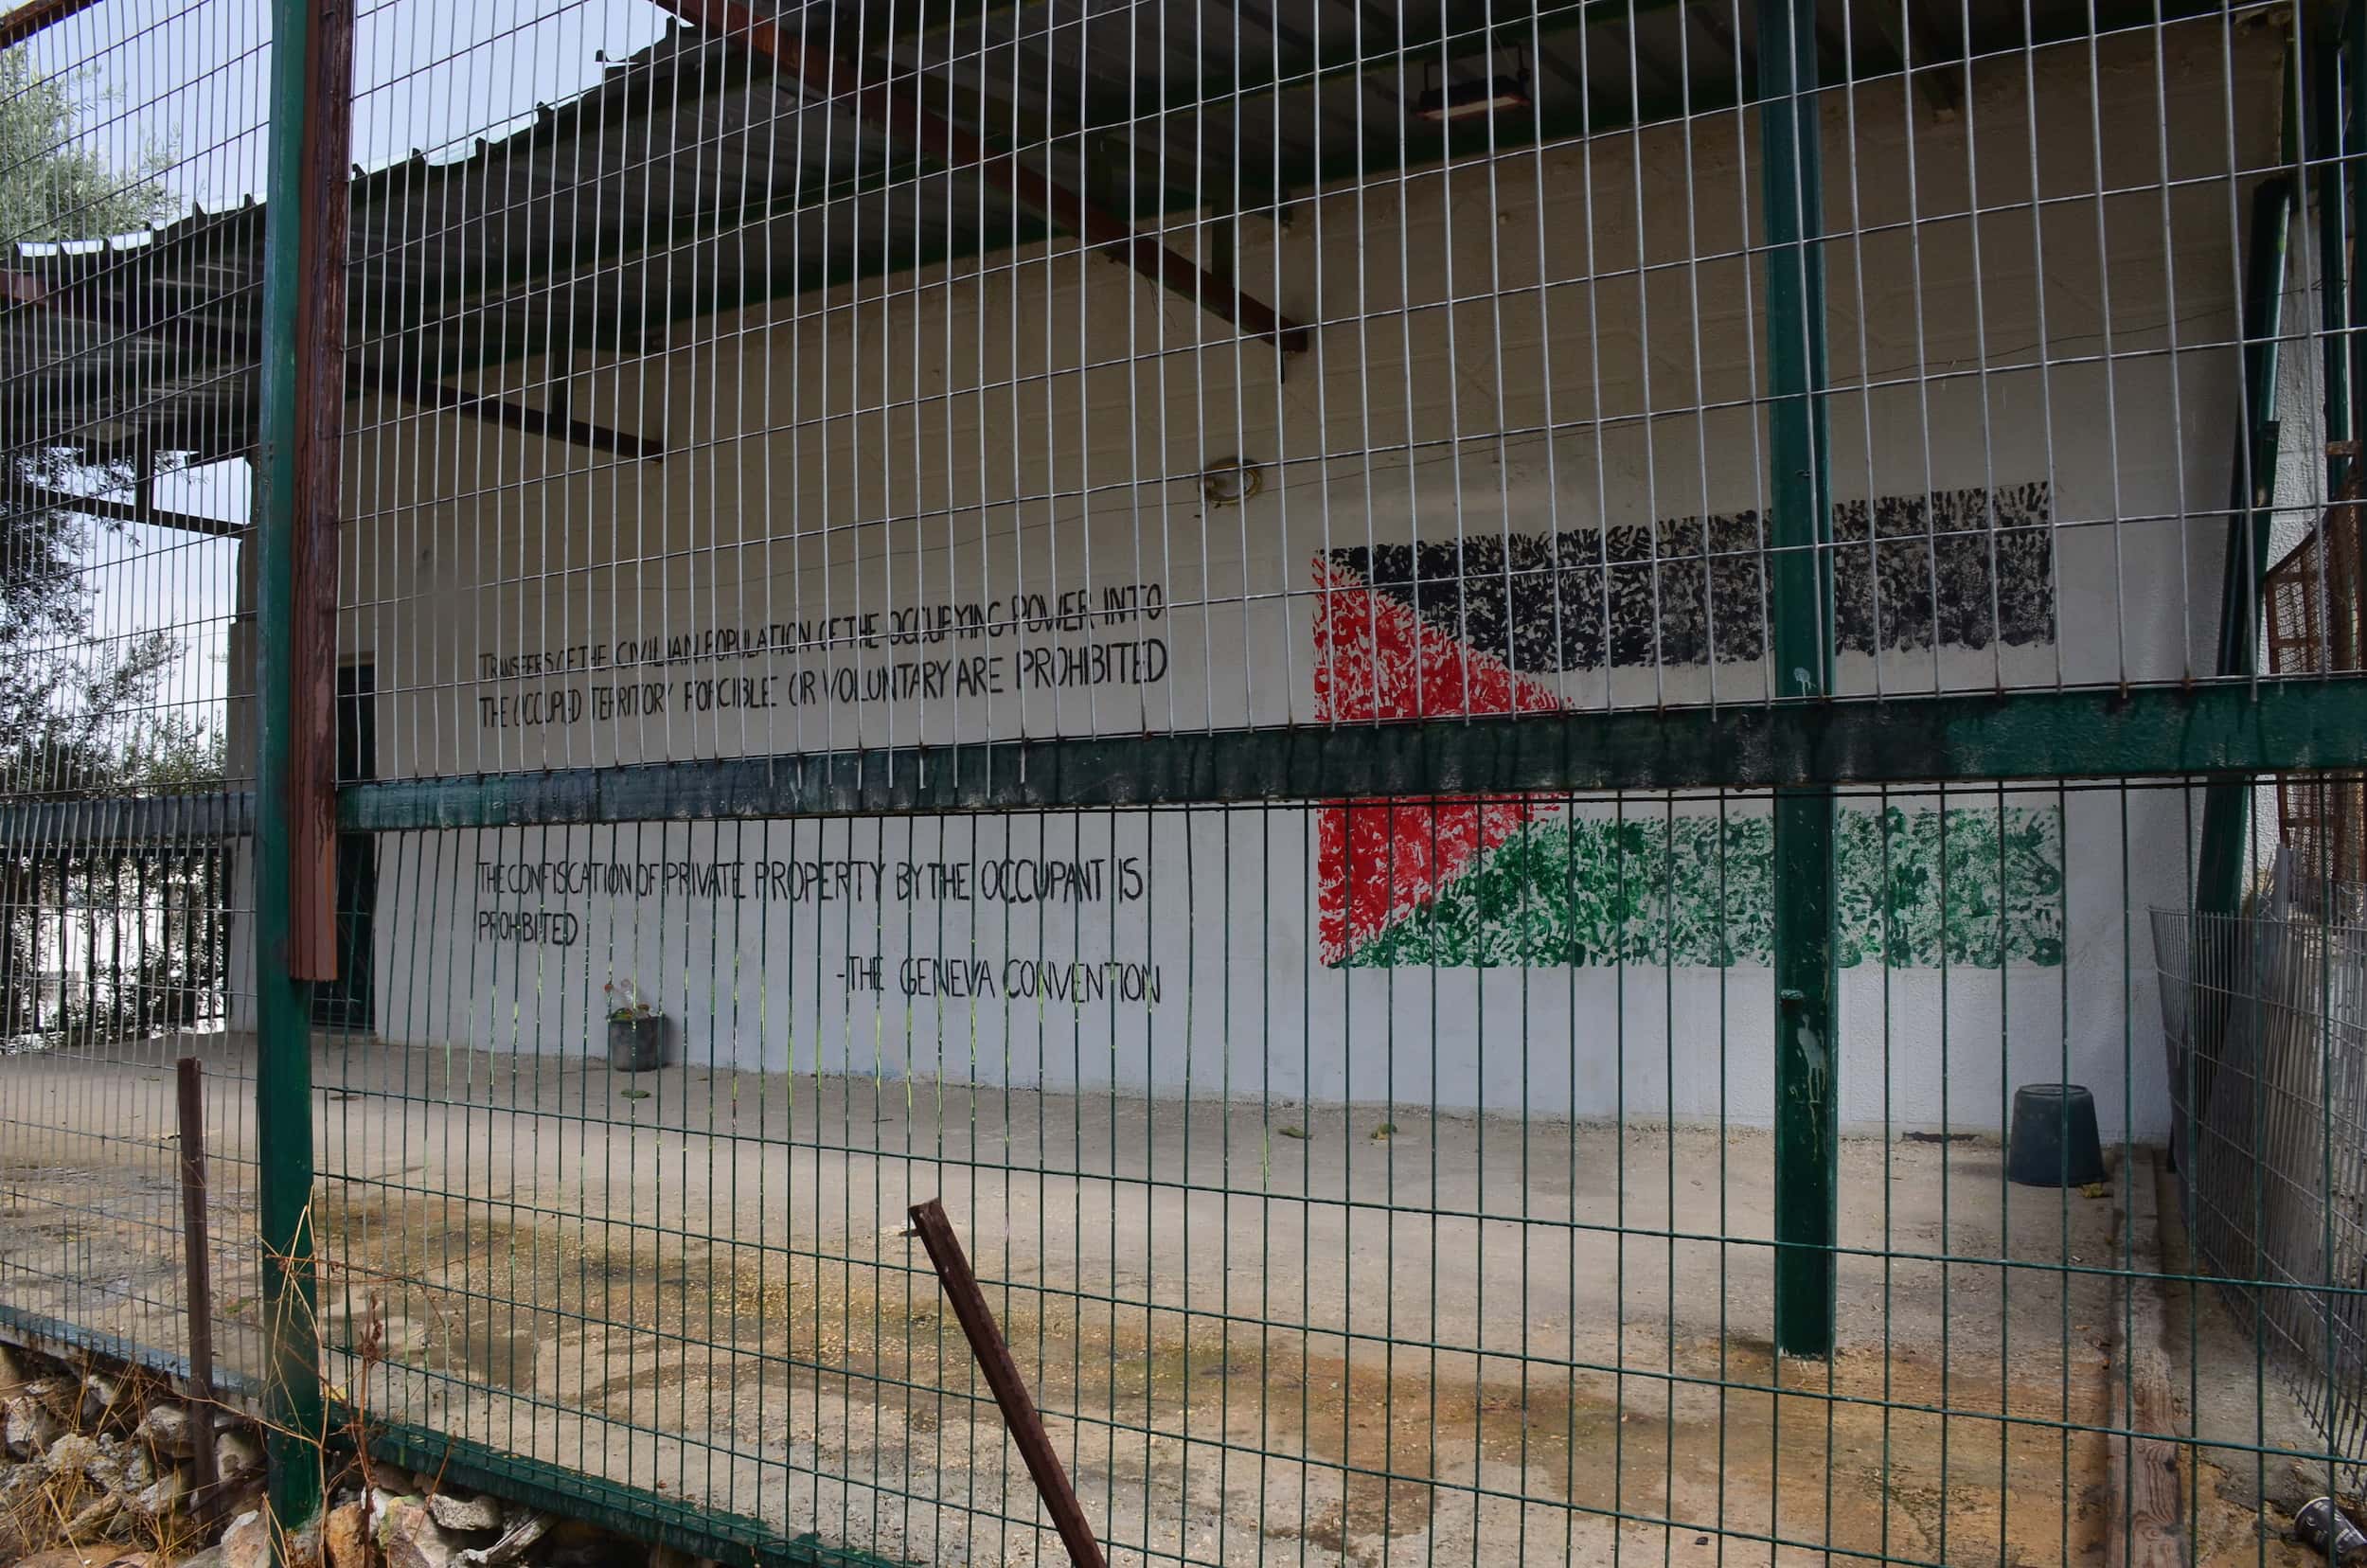 Palestinian activist building in Hebron